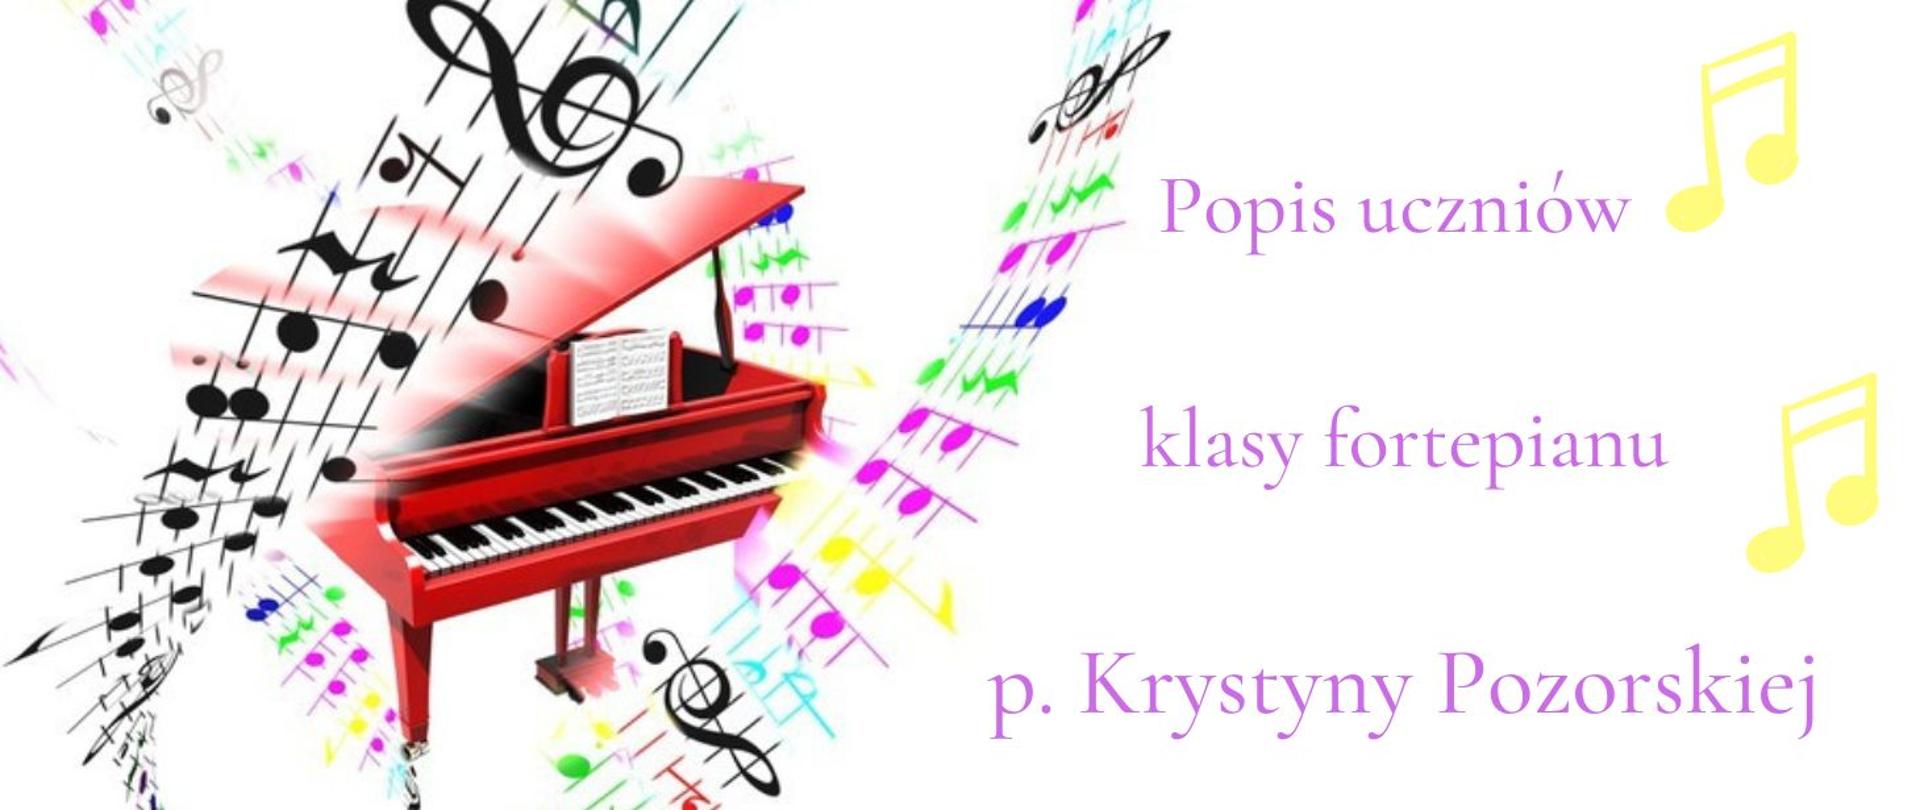 Panorama w poziomie informująca o popisie uczniów klasy fortepianu p. Krystyny Pozorskiej literami w kolorze fioletowym, obok kolorowa grafika czerwonego fortepianu otoczonego pięcioliniami z kolorowymi i czarnymi nutami.